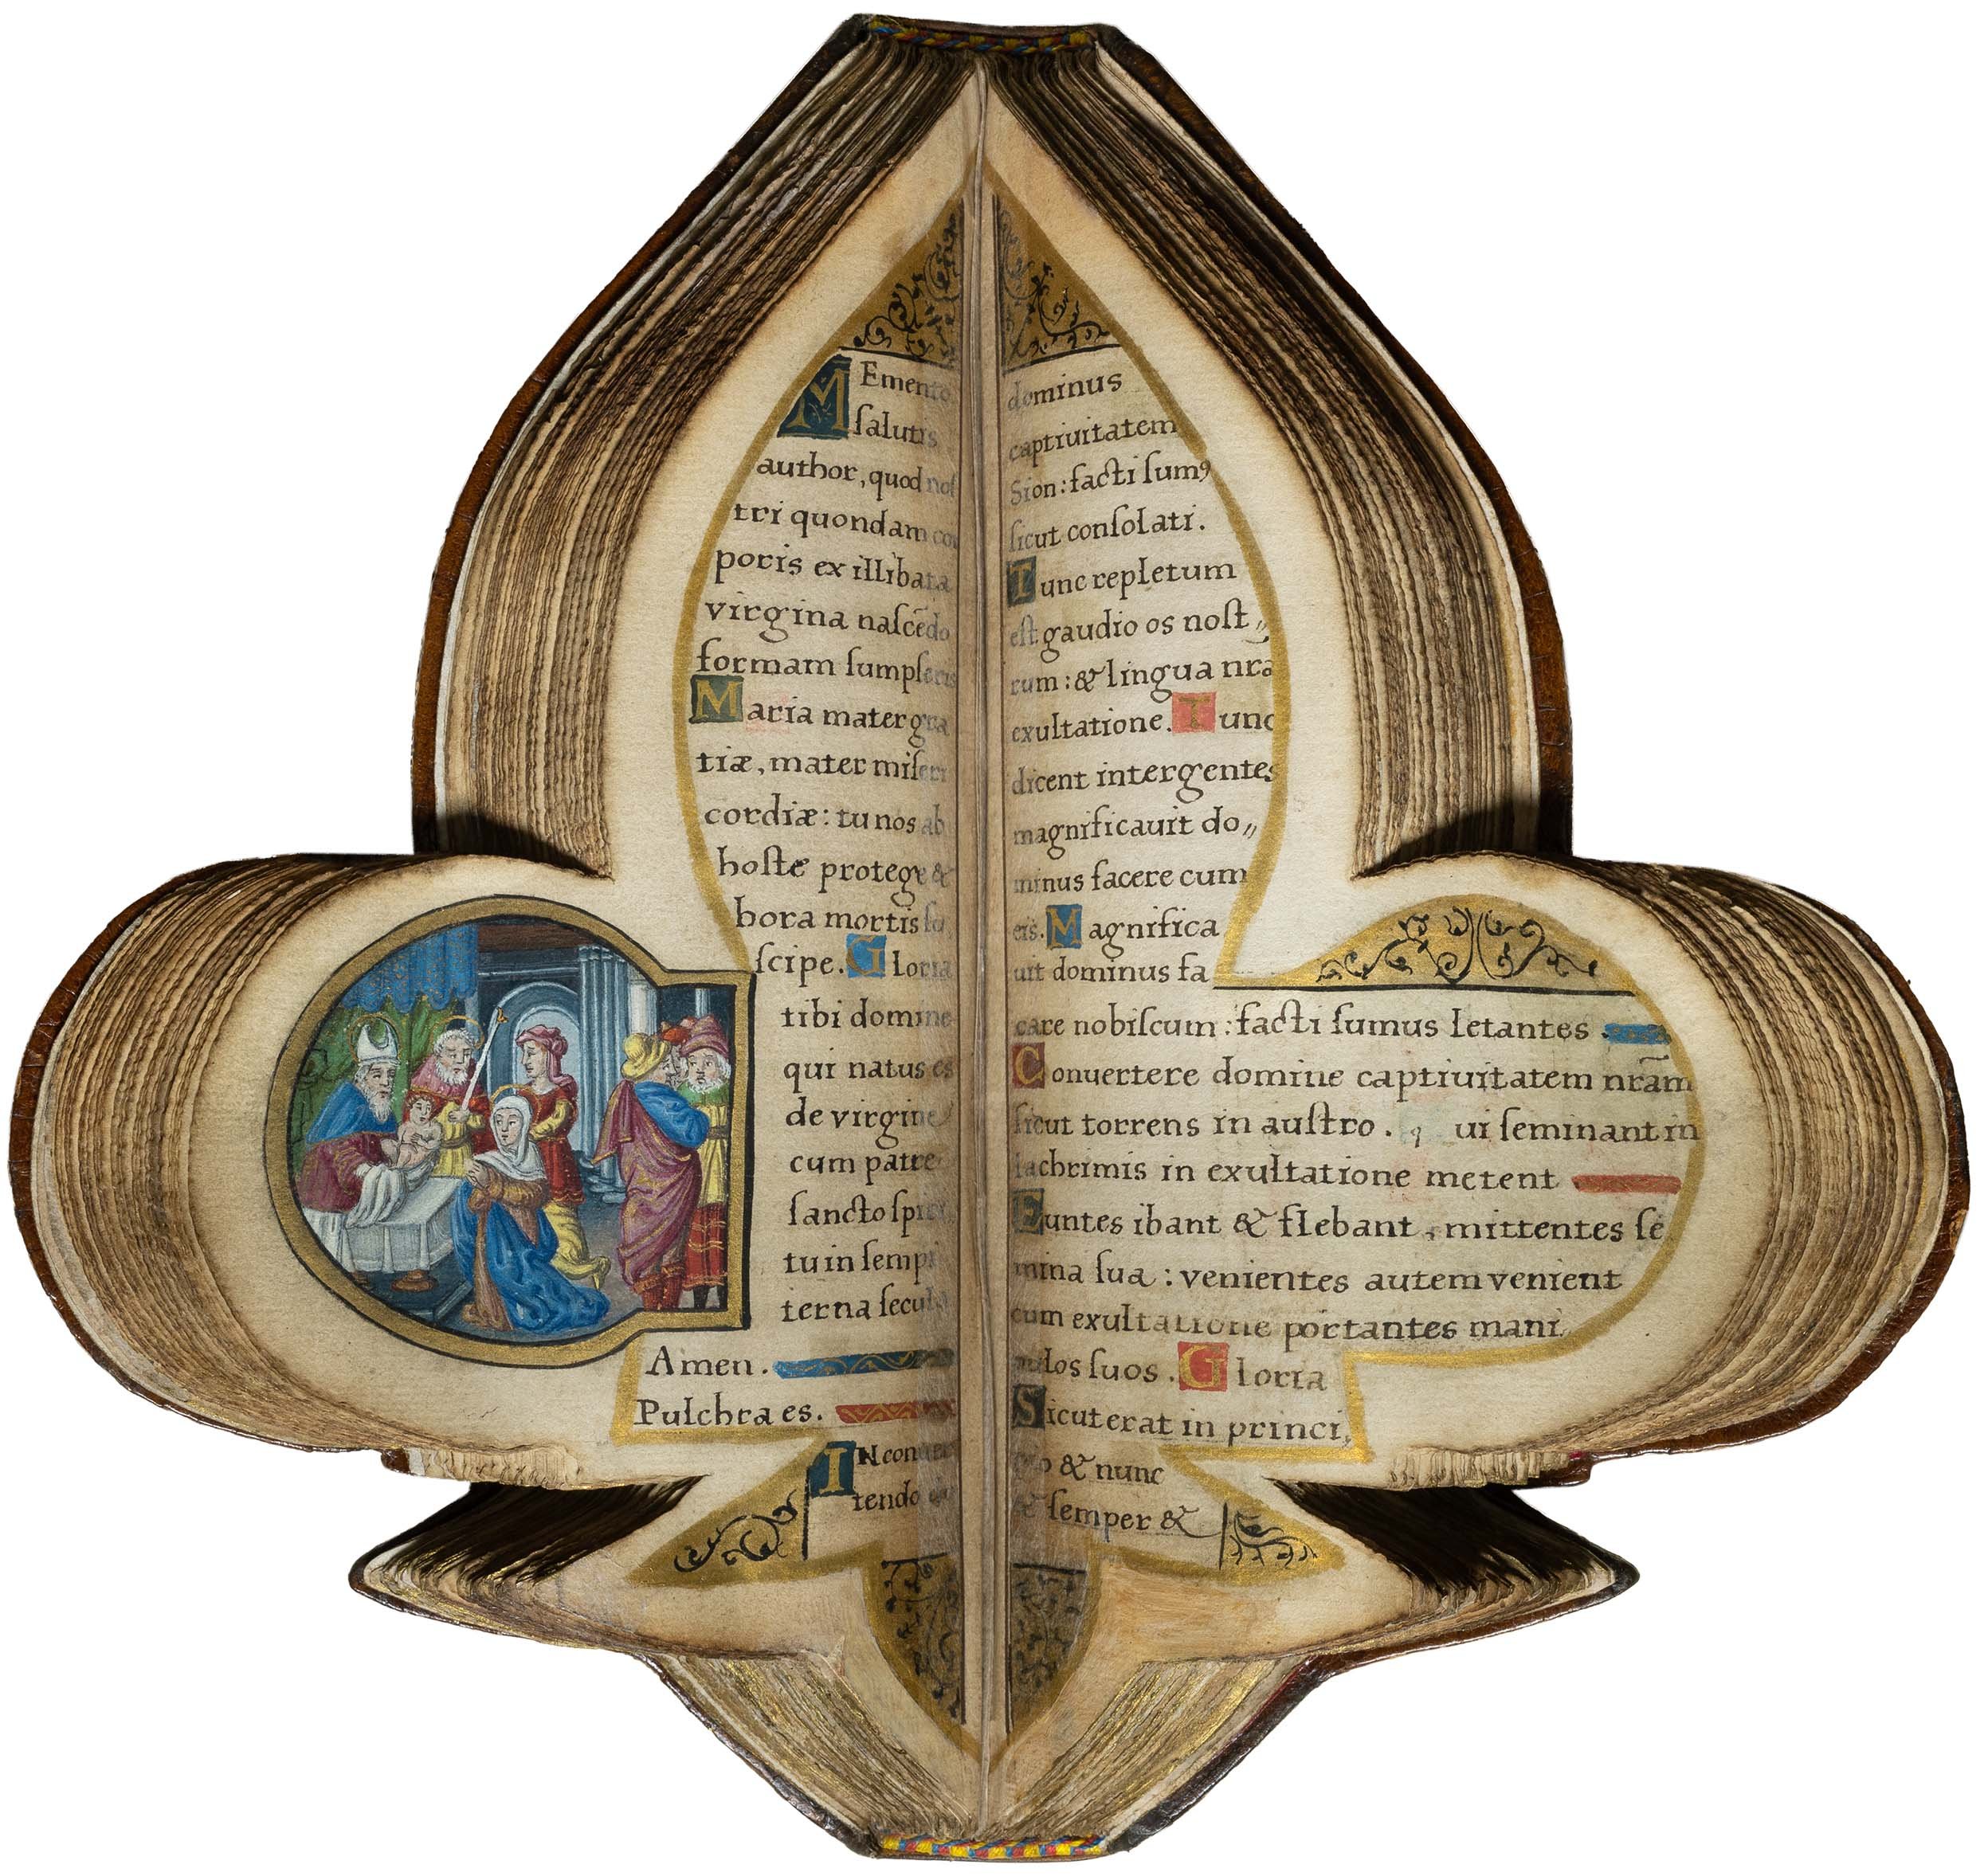 Book-of-hours-bourbon-lily-shape-manuscript-napoleon-beauharnais-combermere-paris-16th-century-17.jpg